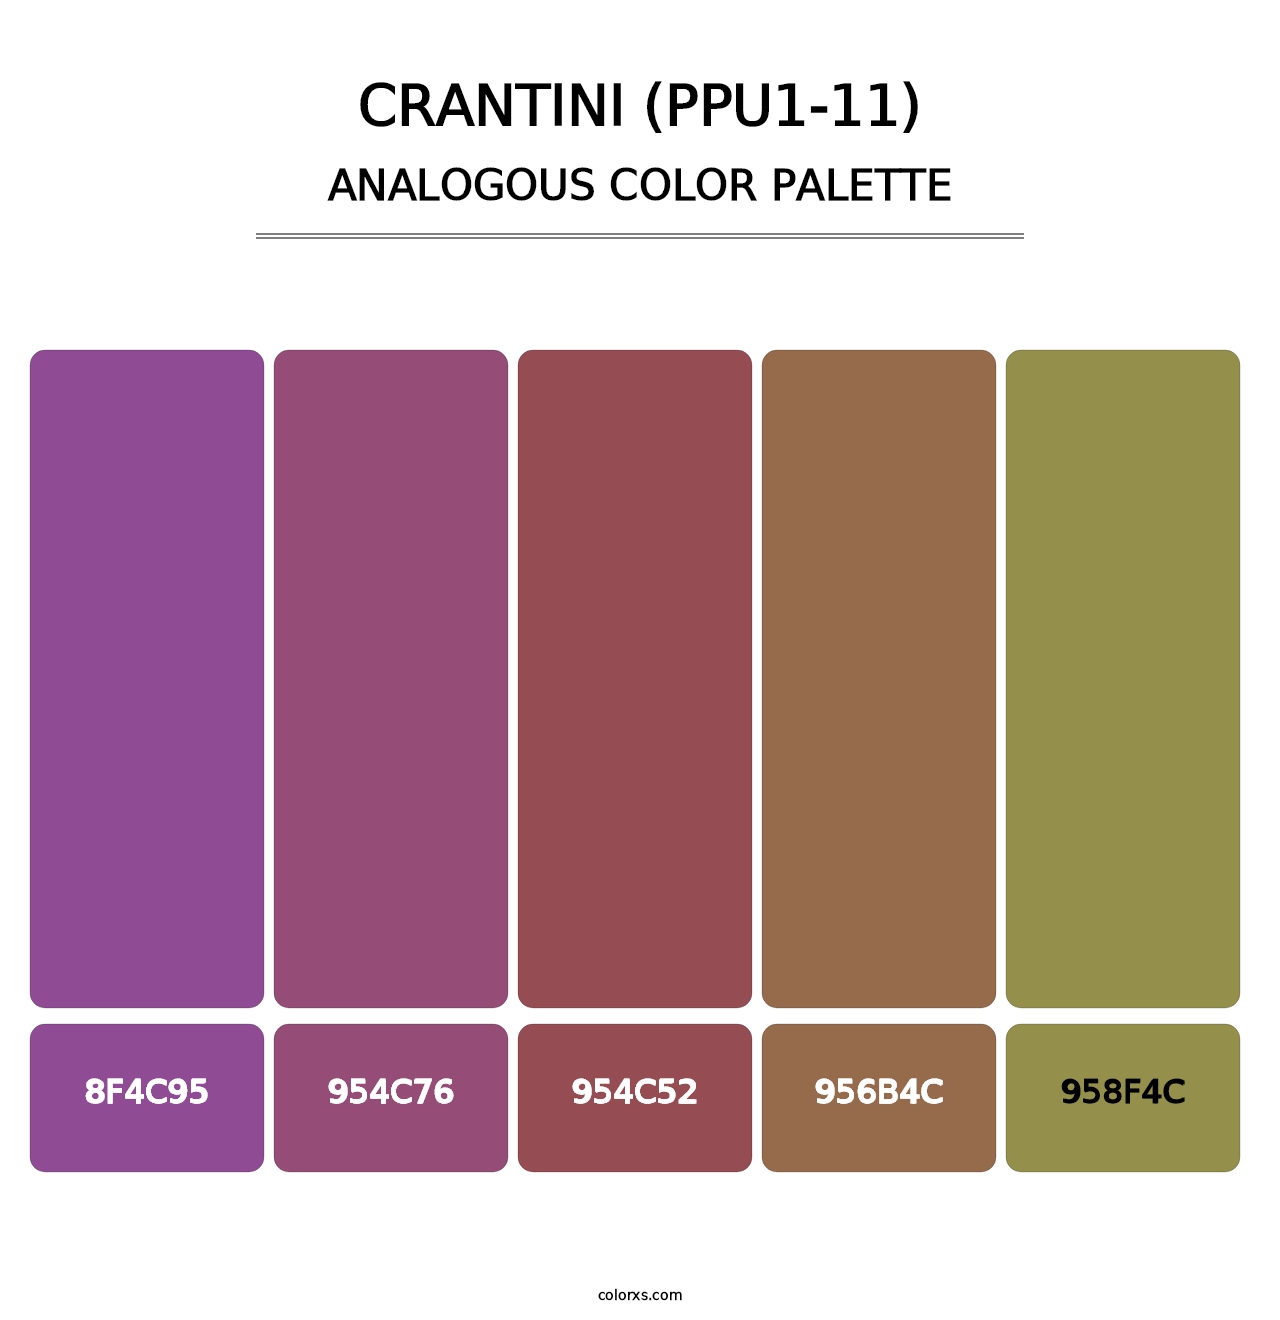 Crantini (PPU1-11) - Analogous Color Palette